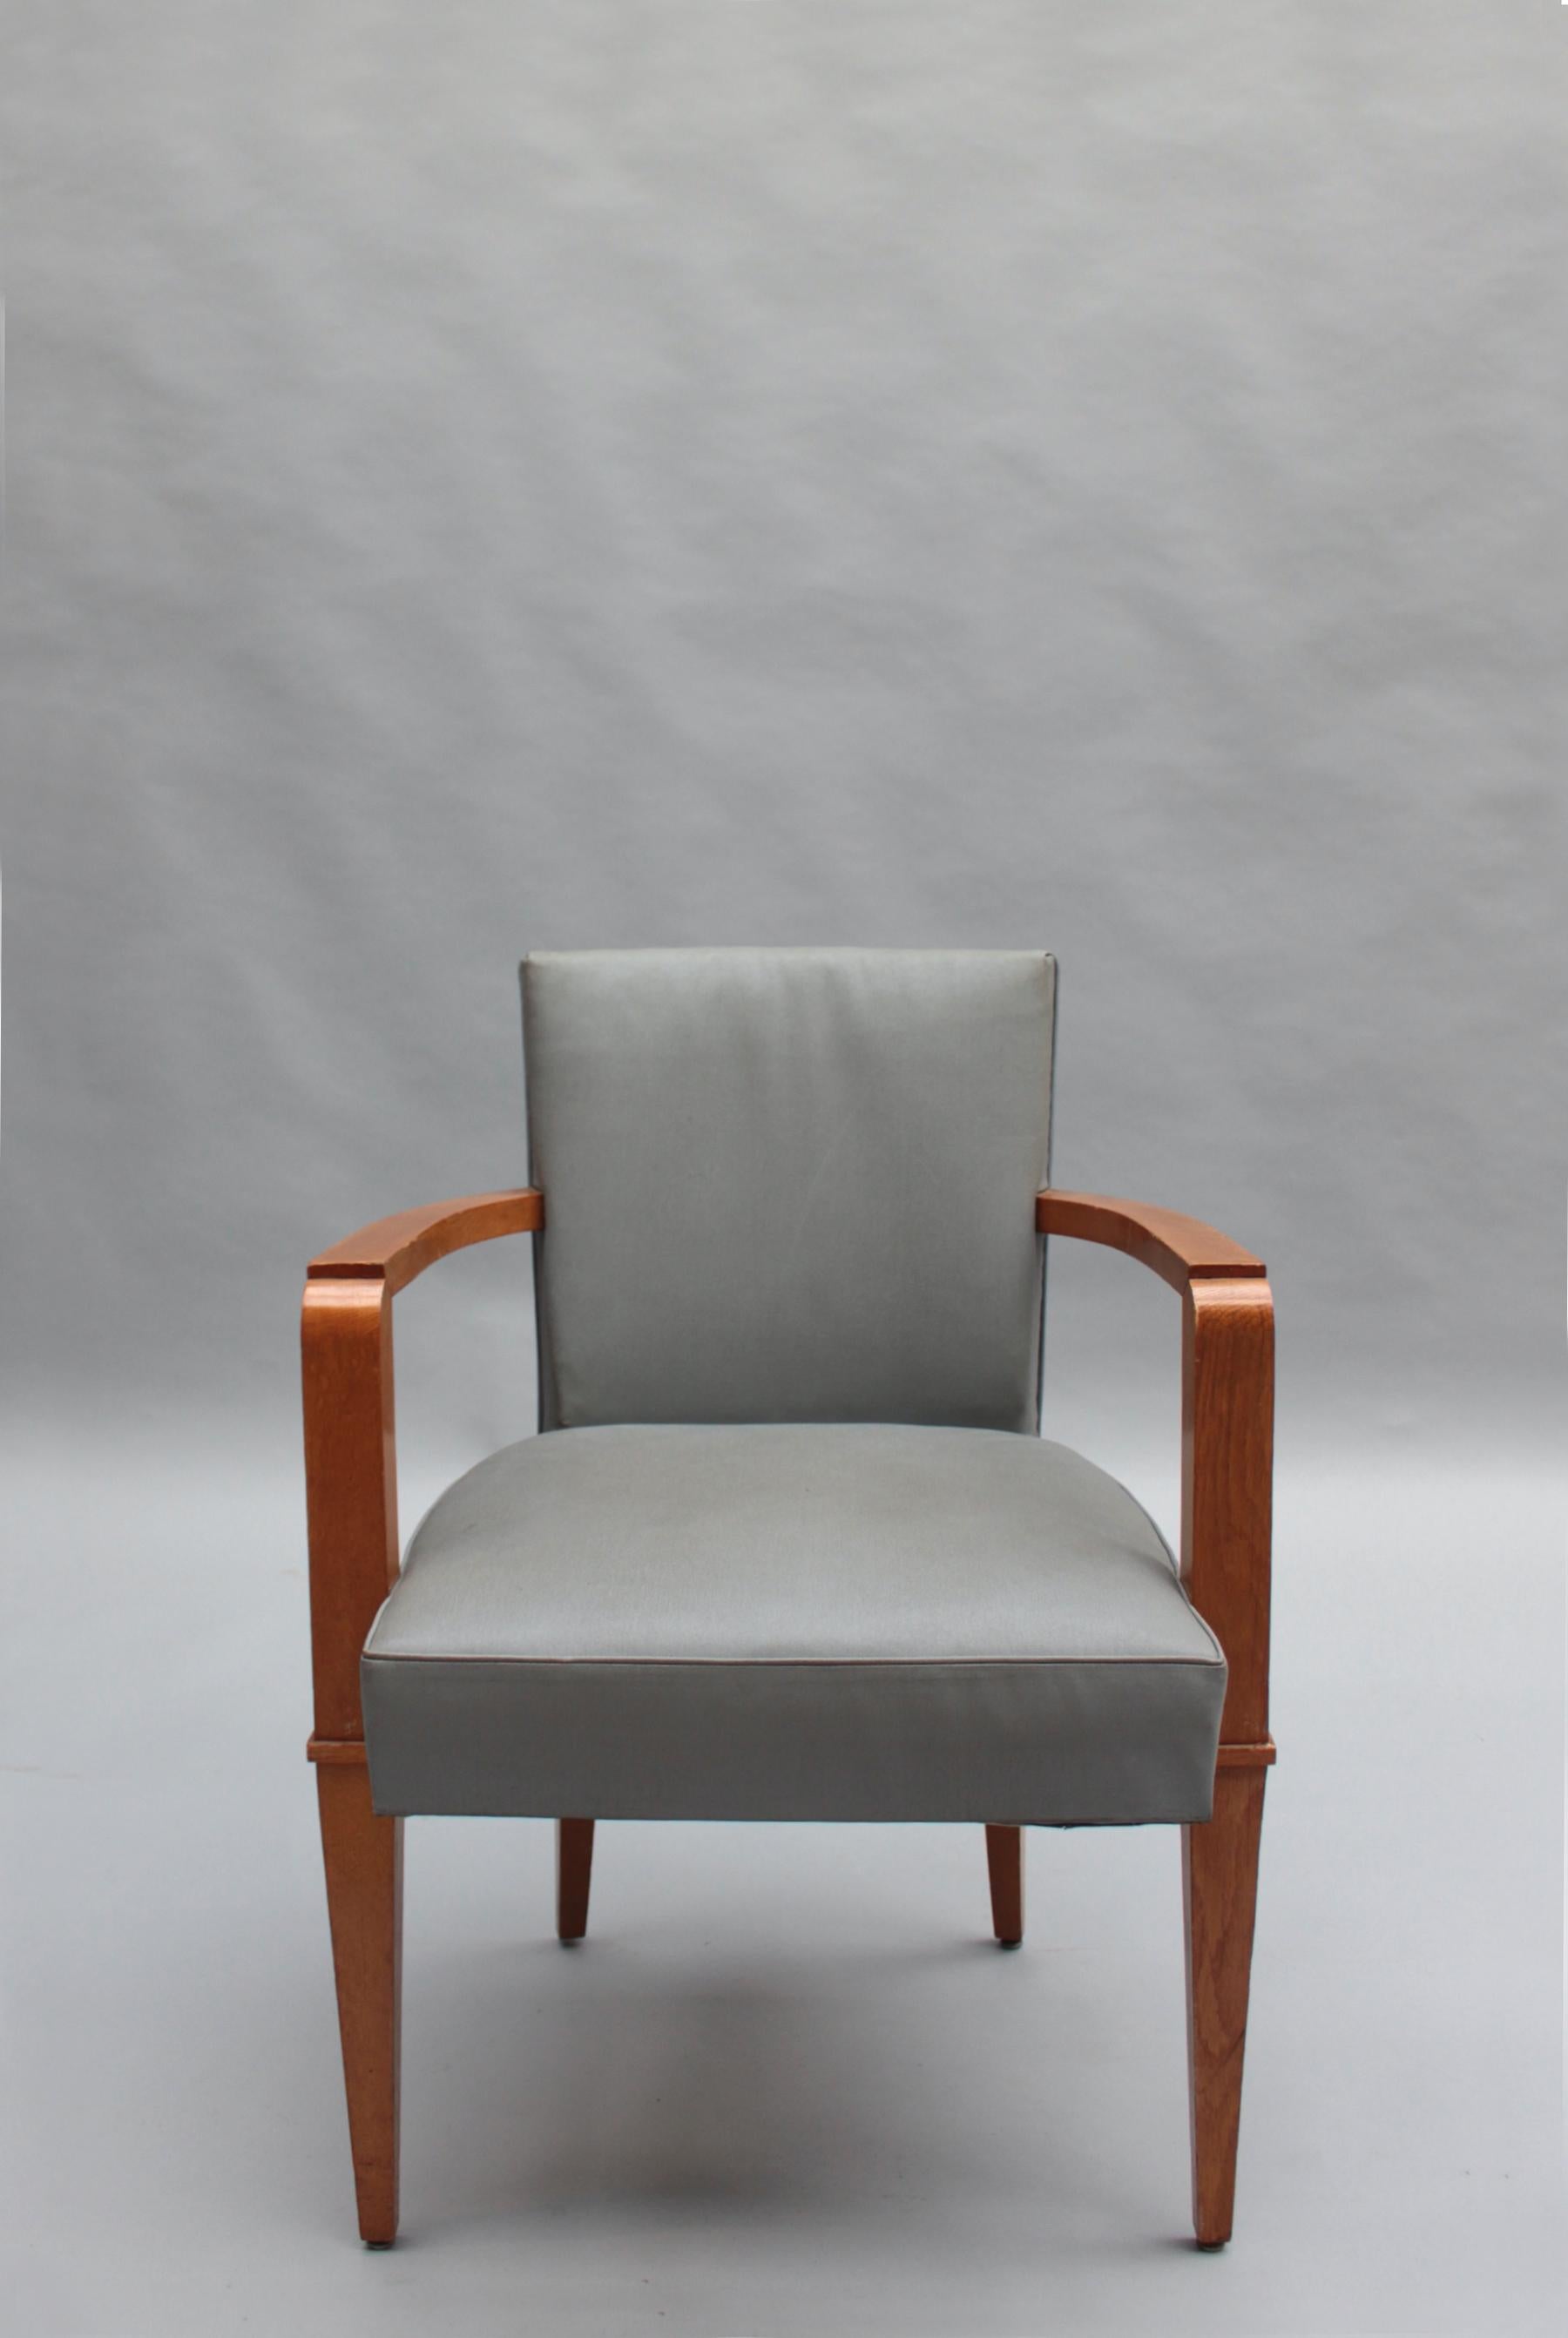 Jacques Quinet (1918 - 1992) - Onze fauteuils de bureau ou chaises de salle à manger en chêne massif des années 1940.

Provenance : Salle de lecture de la bibliothèque de Rouen.

Prix par chaise
